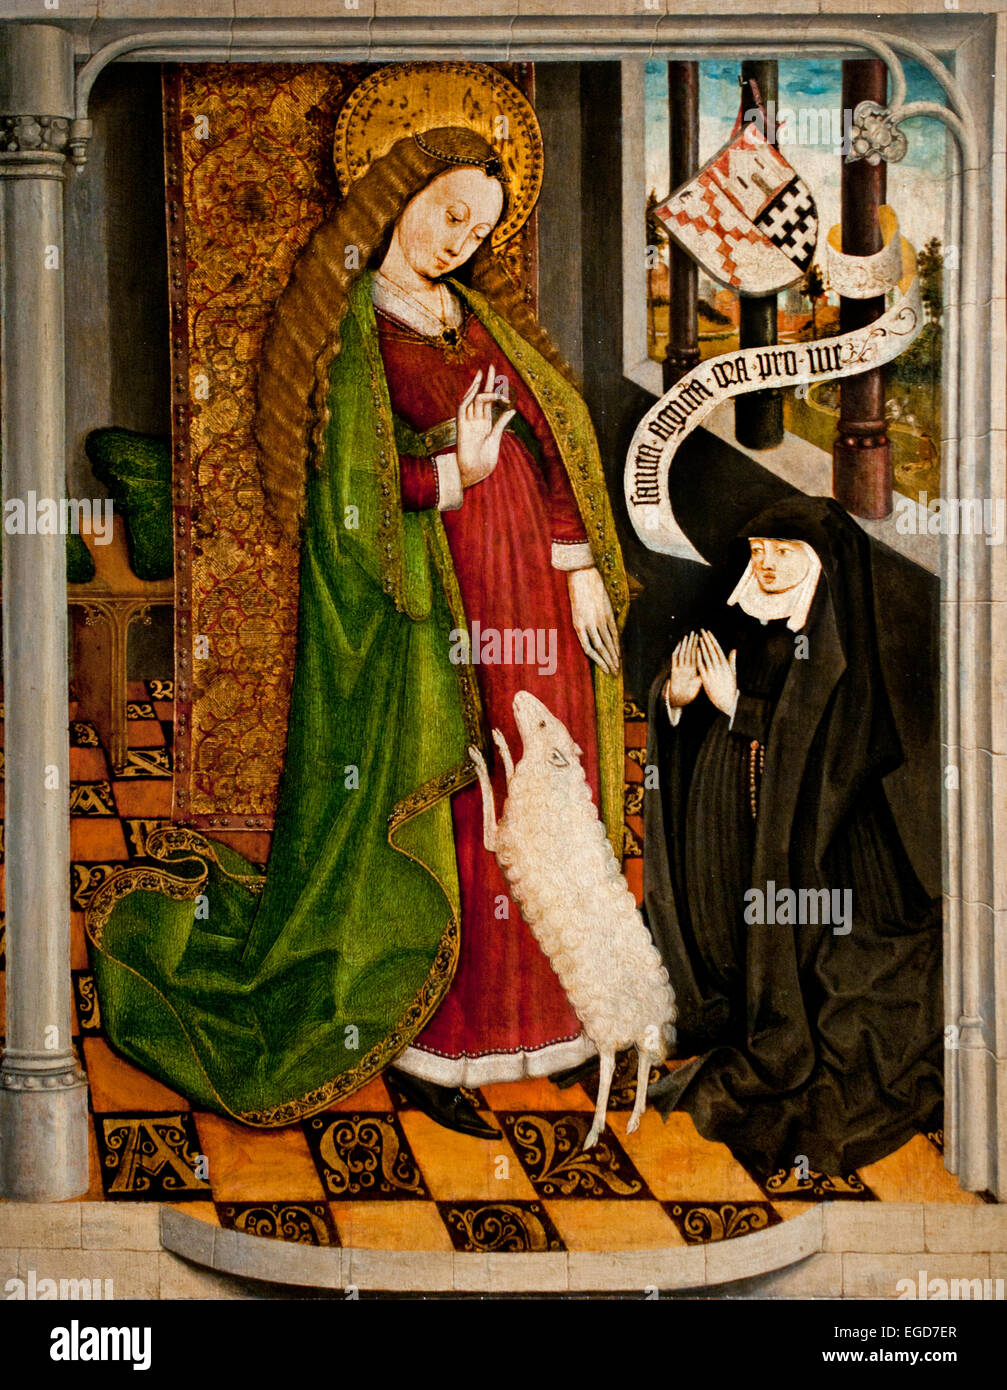 Geertruy Haeck kniend in Anbetung vor Saint Agnes 1465 Dordrecht Niederlande Niederlande Mittelalter Mittelalter Stockfoto